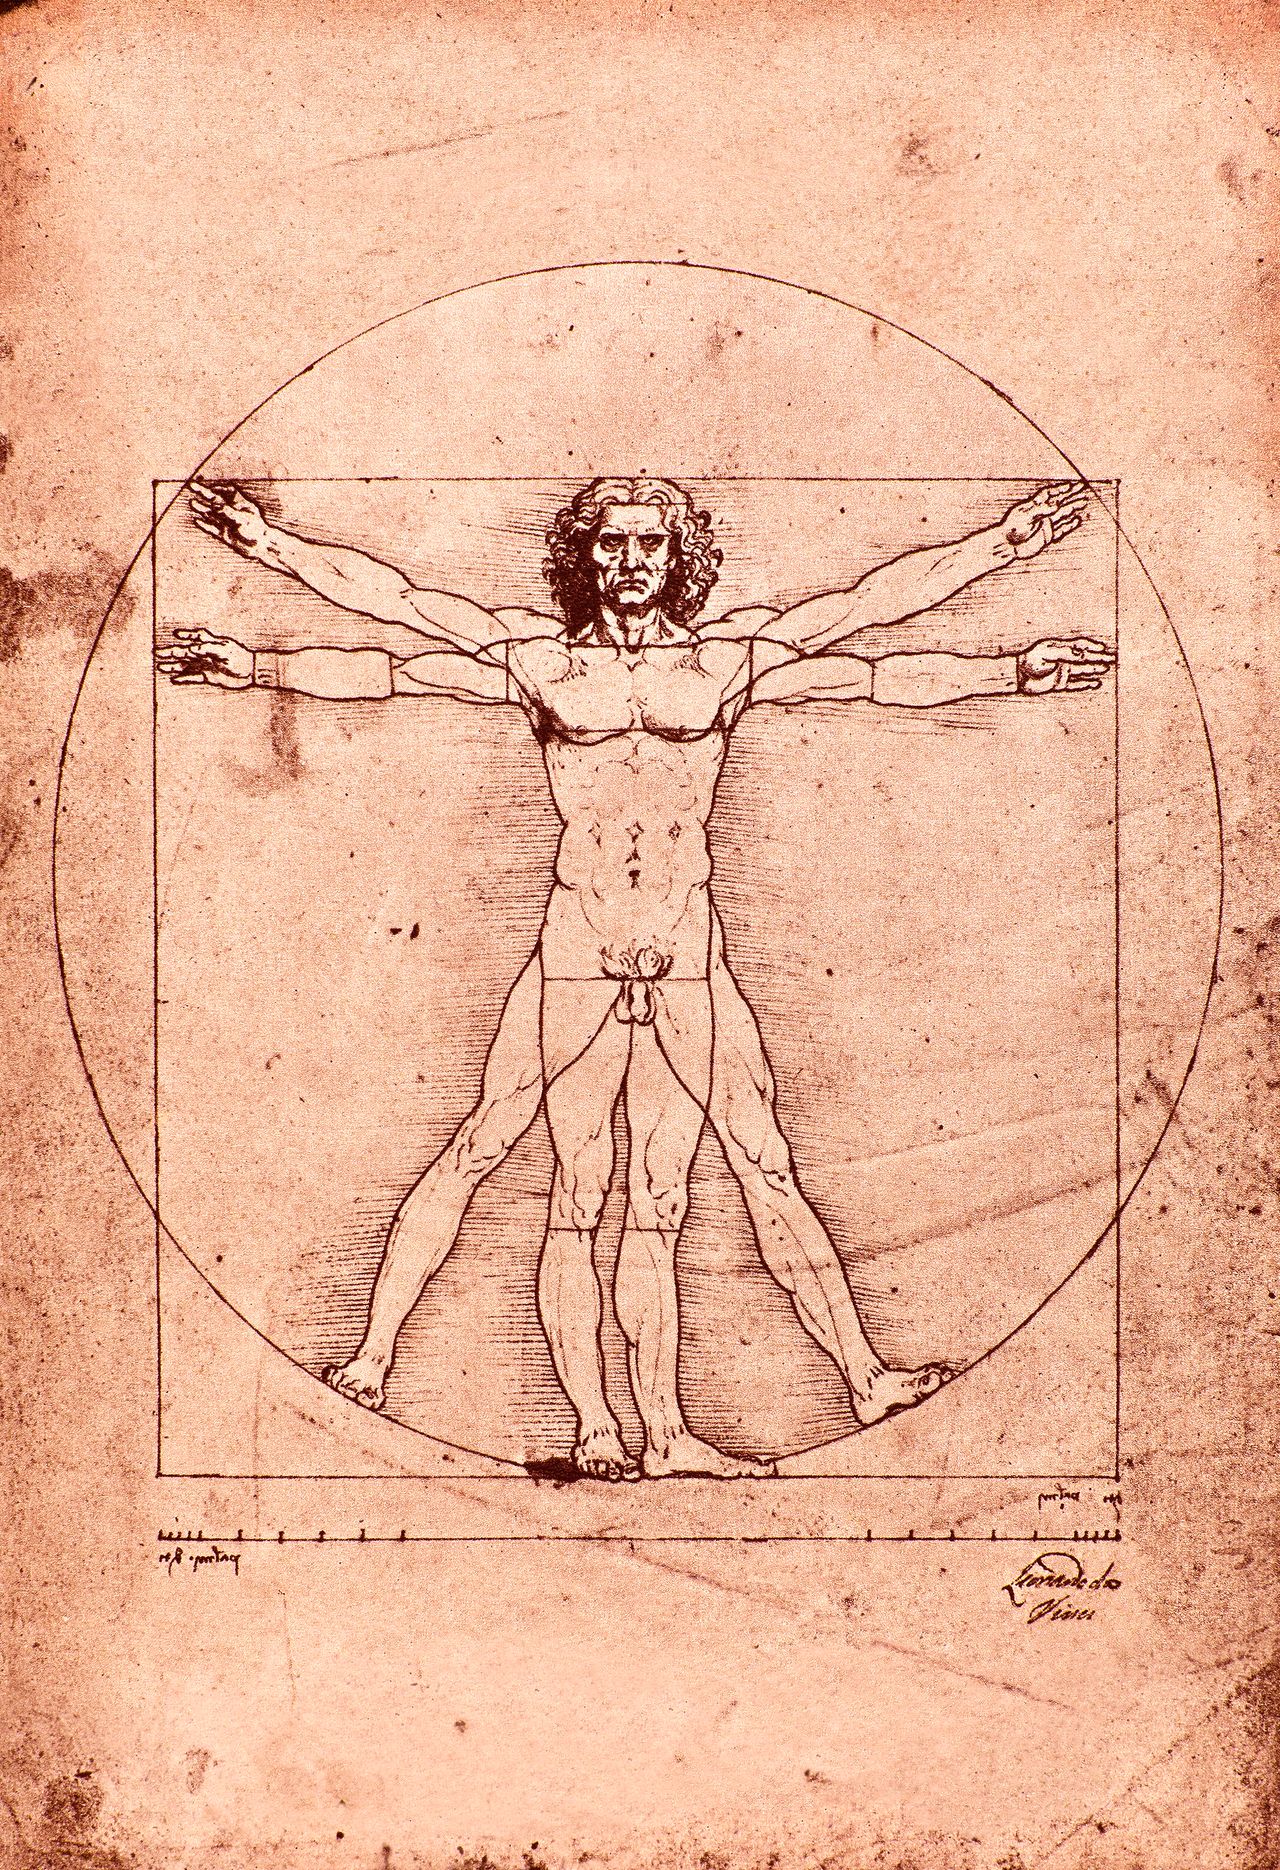 Ο Άνθρωπος του Βιτρούβιου αντιπροσωπεύει τις ιδανικές αναλογίες του ανθρώπινου σώματος. Οι αναλογίες αυτές στηρίζονται στη Γεωμετρία. Η περίπτωση της Κάστερ Σεμένια είναι πολύ πιο πολύπλοκη.